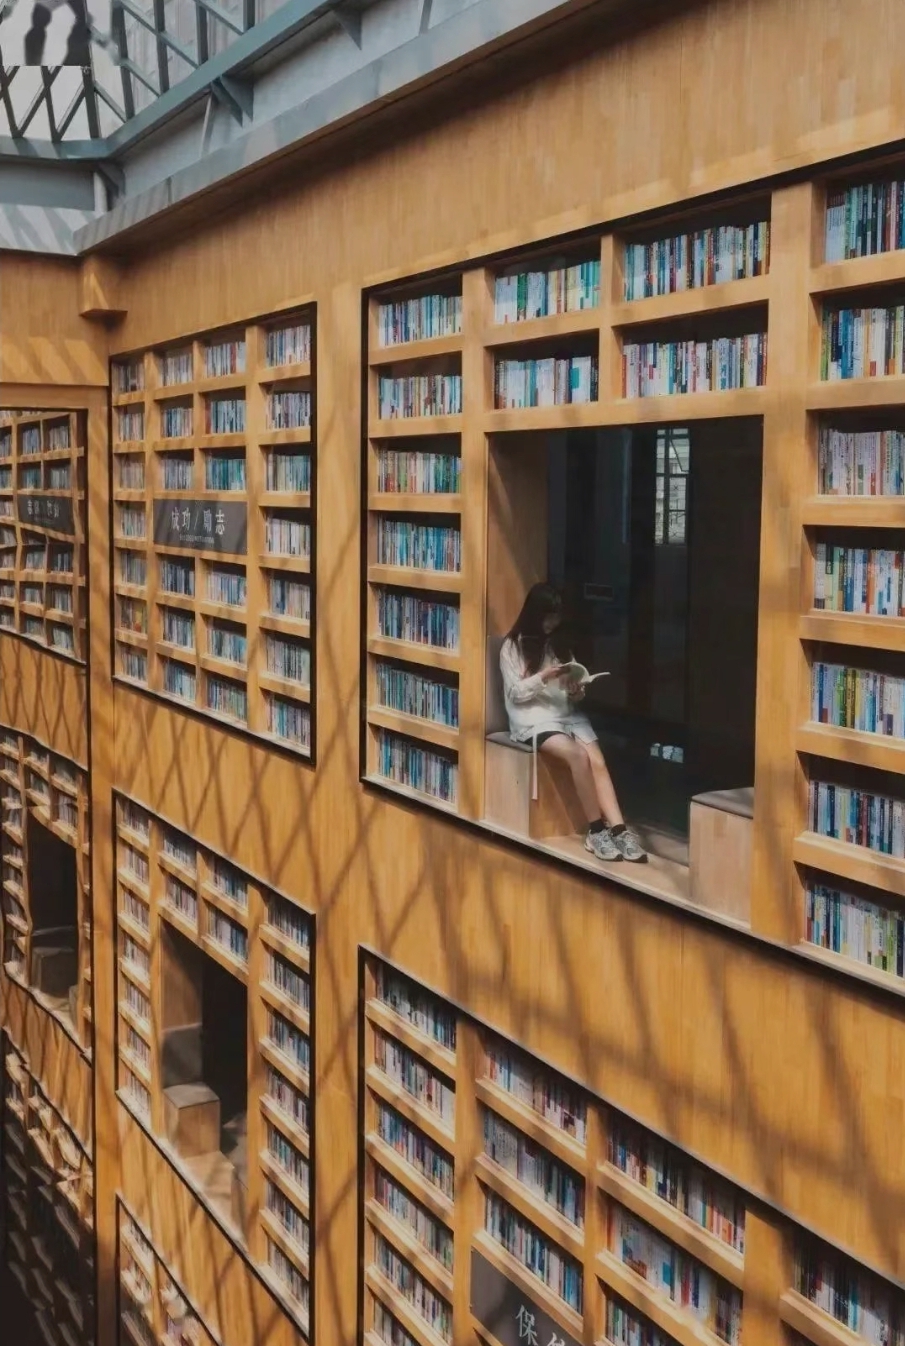 廣州文青朝聖2024｜1. 米谷書店 採立體中空書塔式建築，整個書店主要採用原木色書架，金字塔式玻璃天窗透進陽光。（圖片來源：微信＠米谷書店）